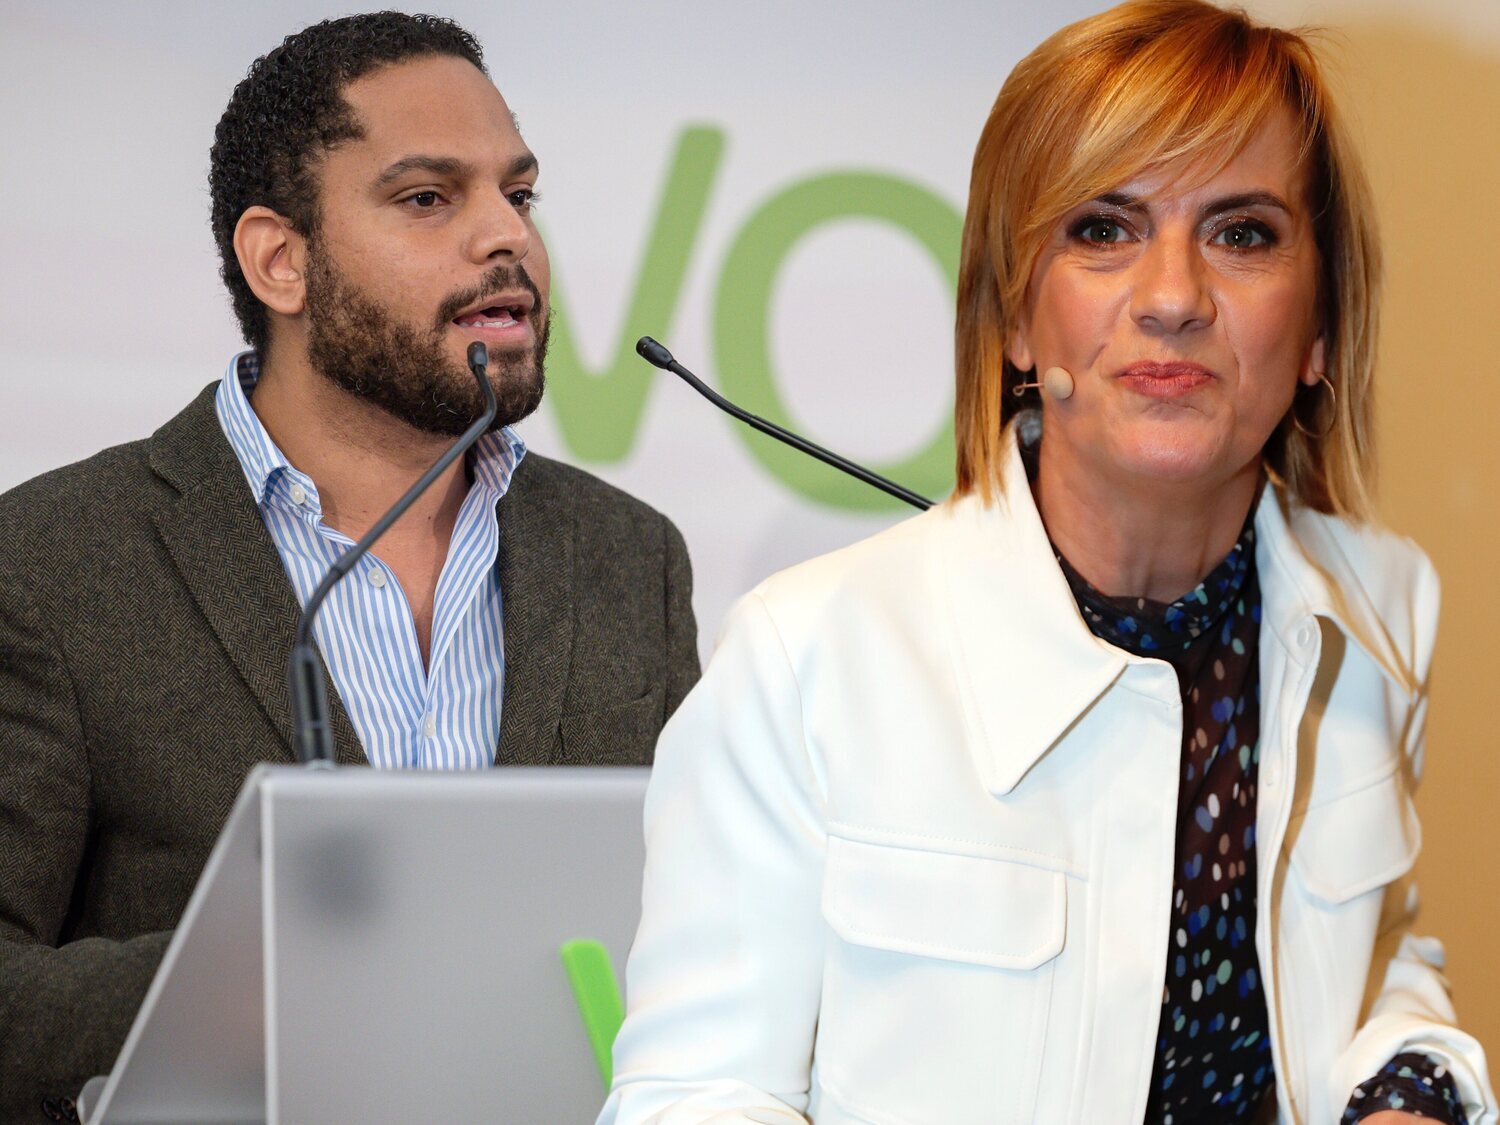 El líder de VOX en Cataluña dice que "no reconoce al colectivo LGTBI" y Gemma Nierga le retrata